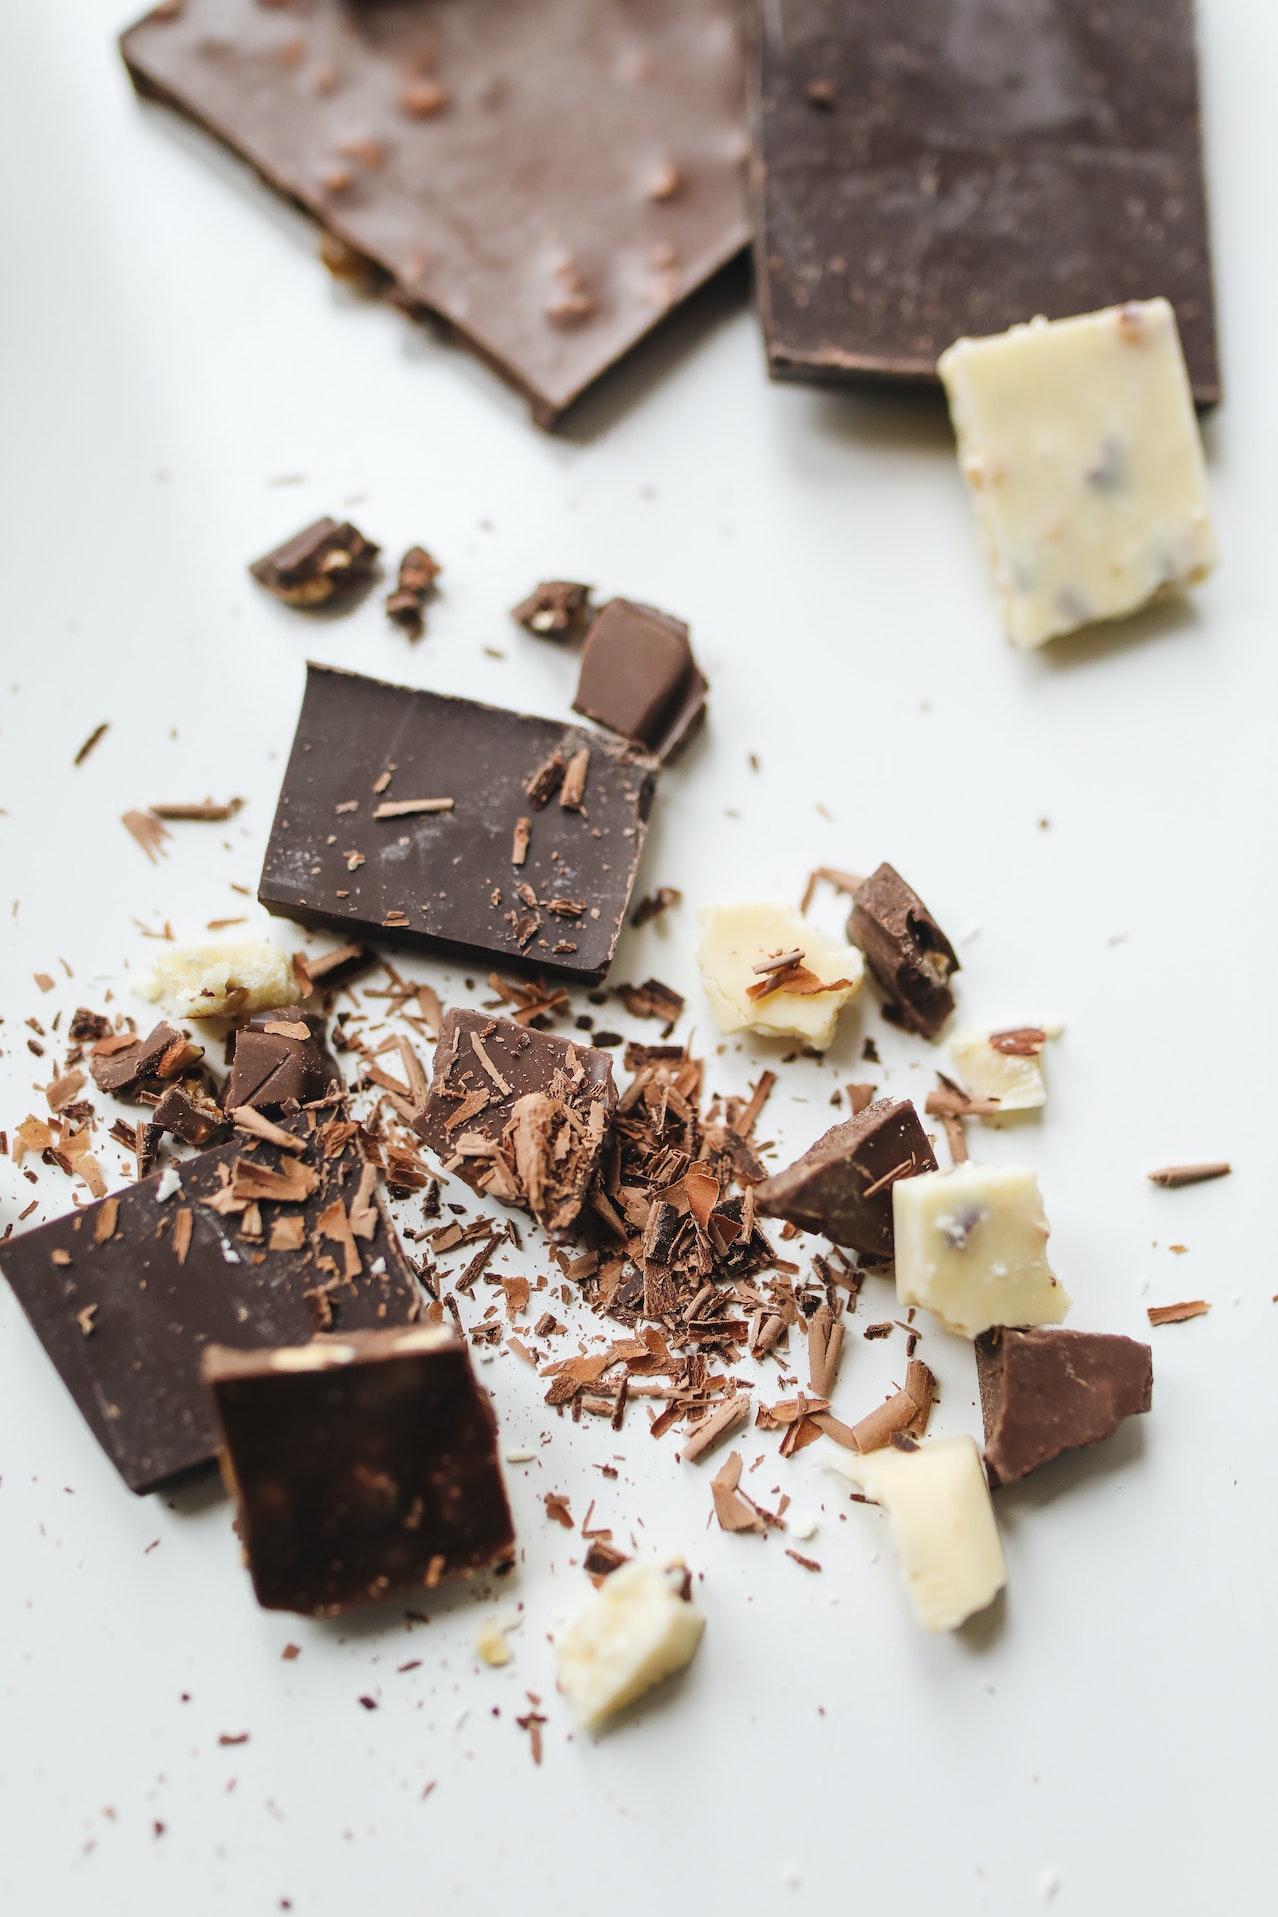 Πώς να αποθηκεύσεις σωστά τη σοκολάτα για να διατηρείται φρέσκια μεγαλύτερο διάστημα